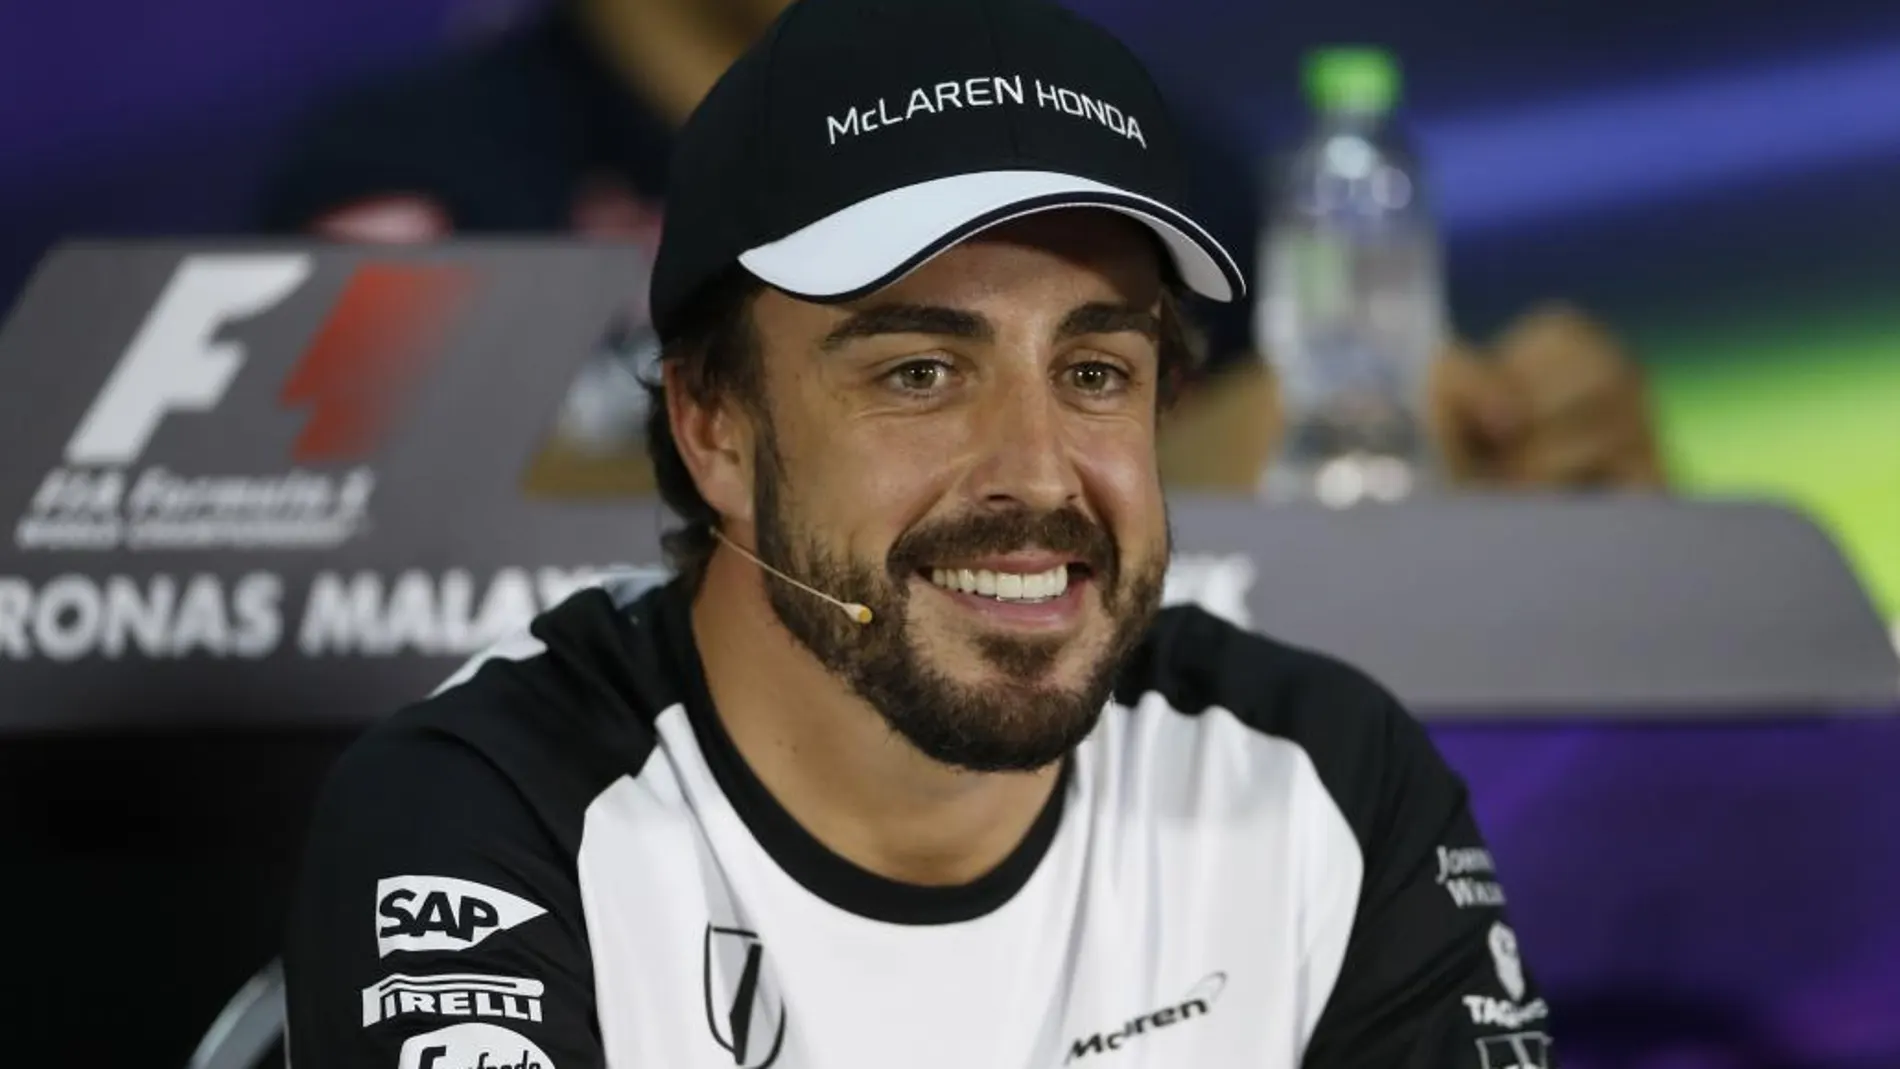 «Luz verde para correr», anunció Alonso en su twitter tras pasar el reconocimiento médico